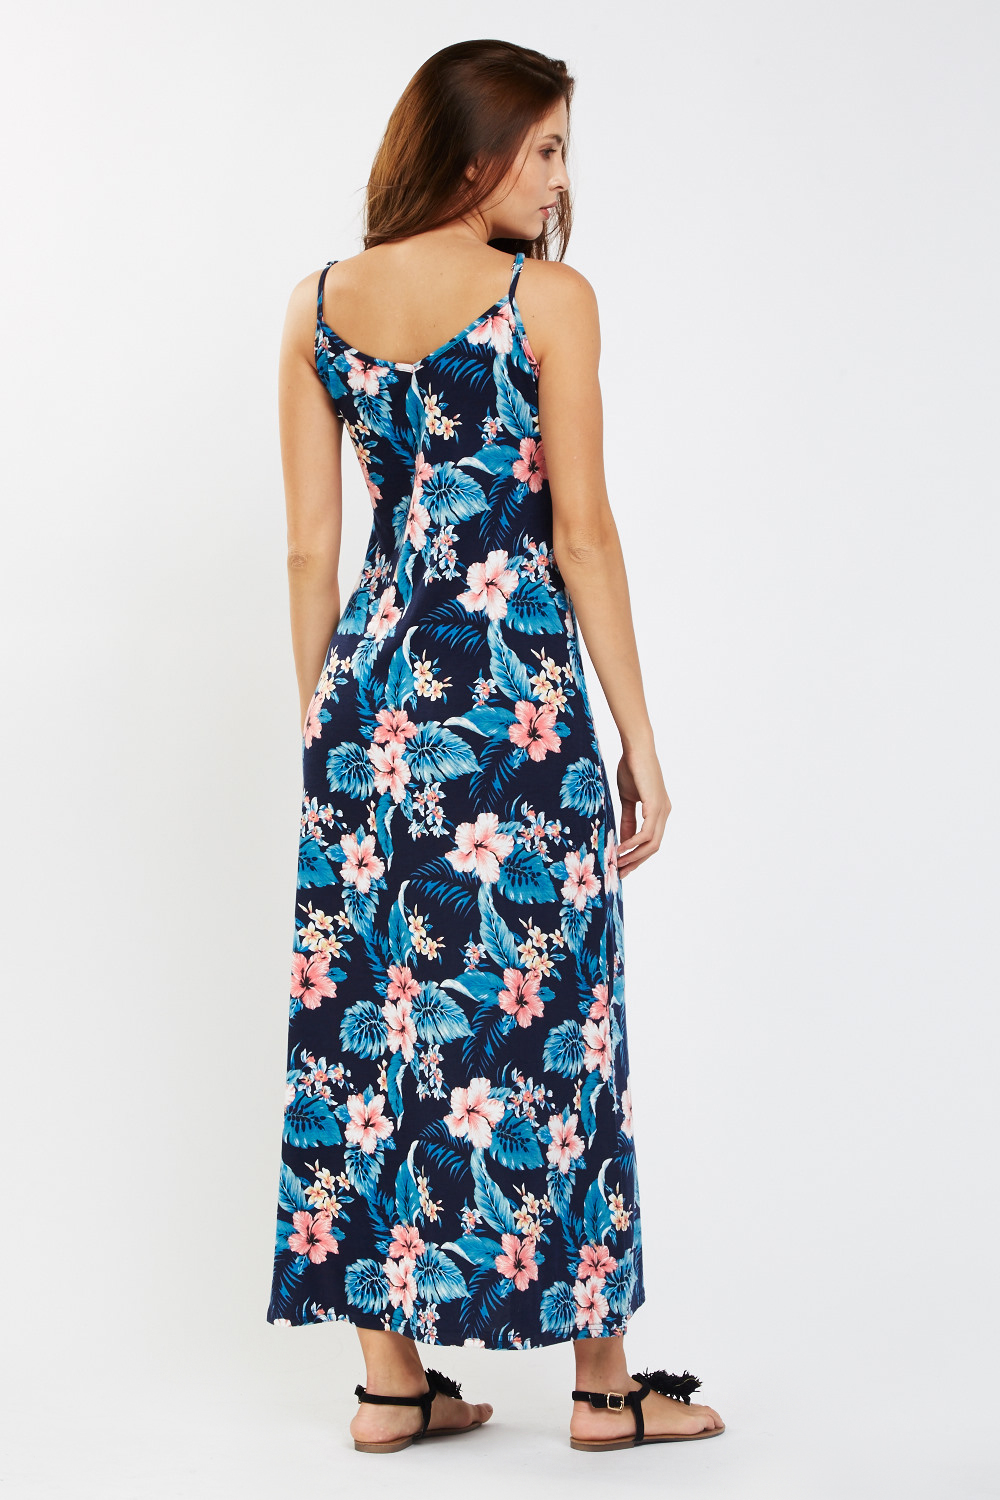 Tropical Print Maxi Dress - Just $6